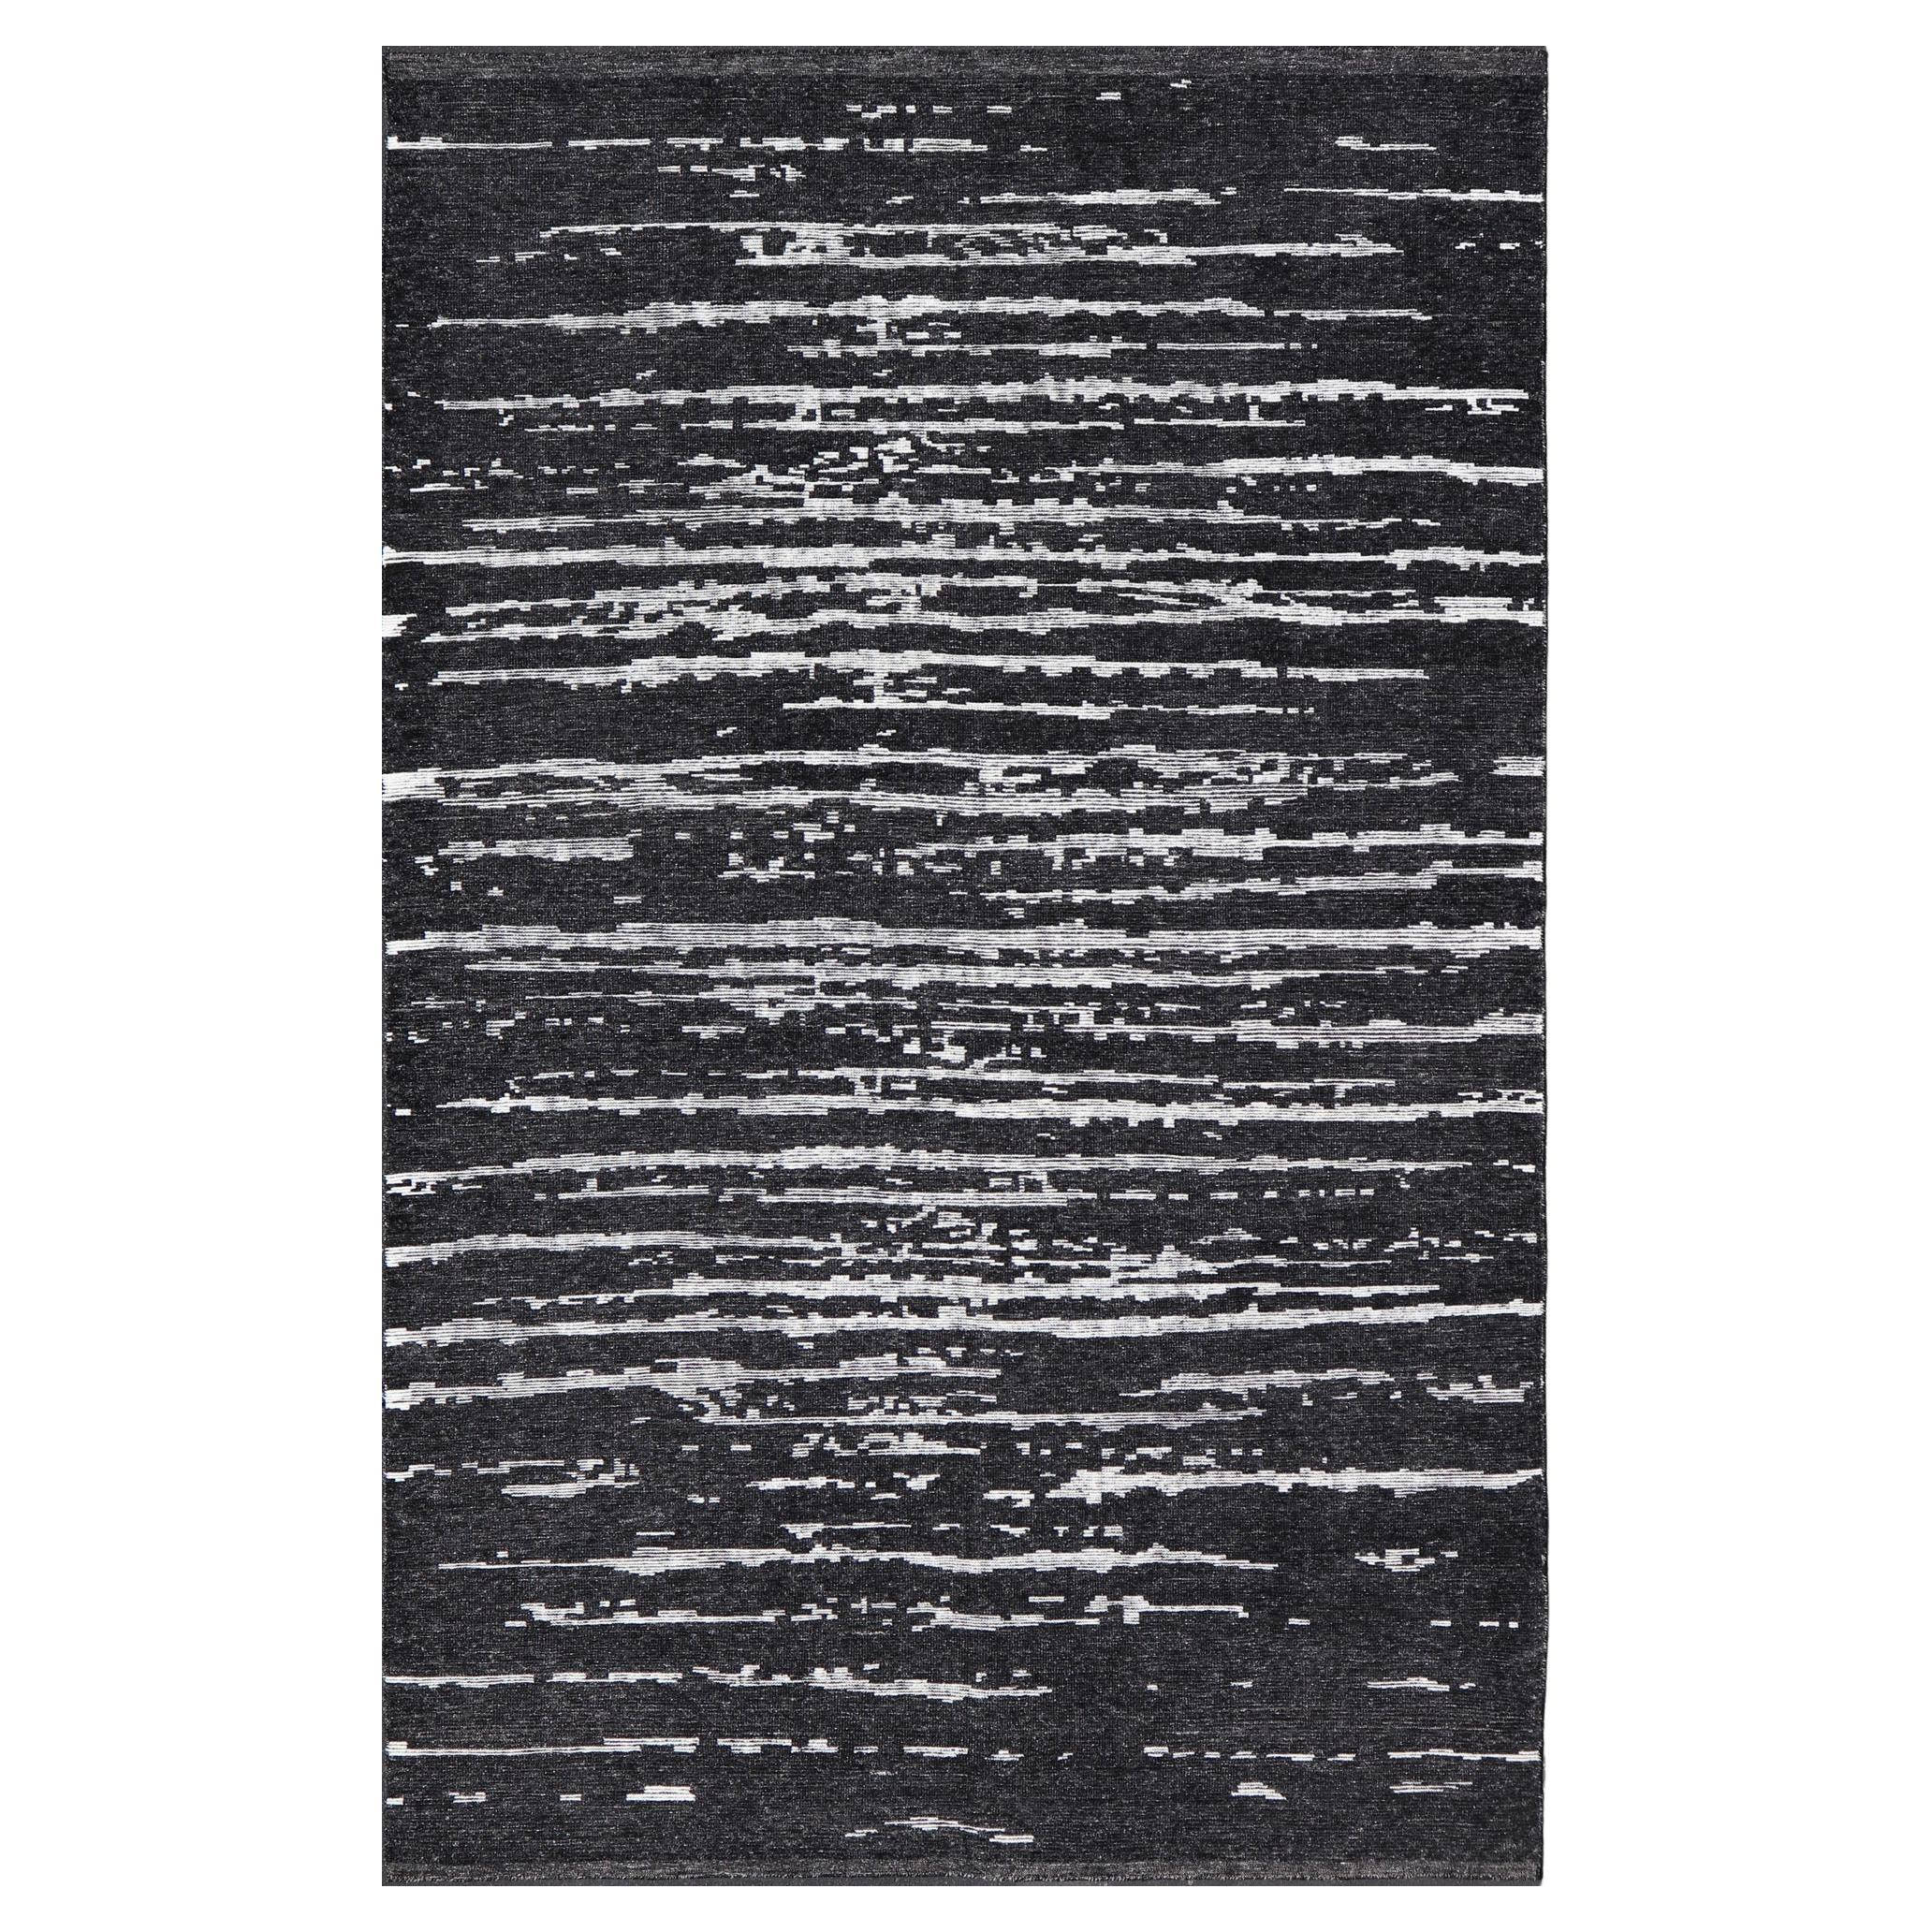 Schwarzer und weißer handgeknüpfter moderner Teppich in abstraktem Design 